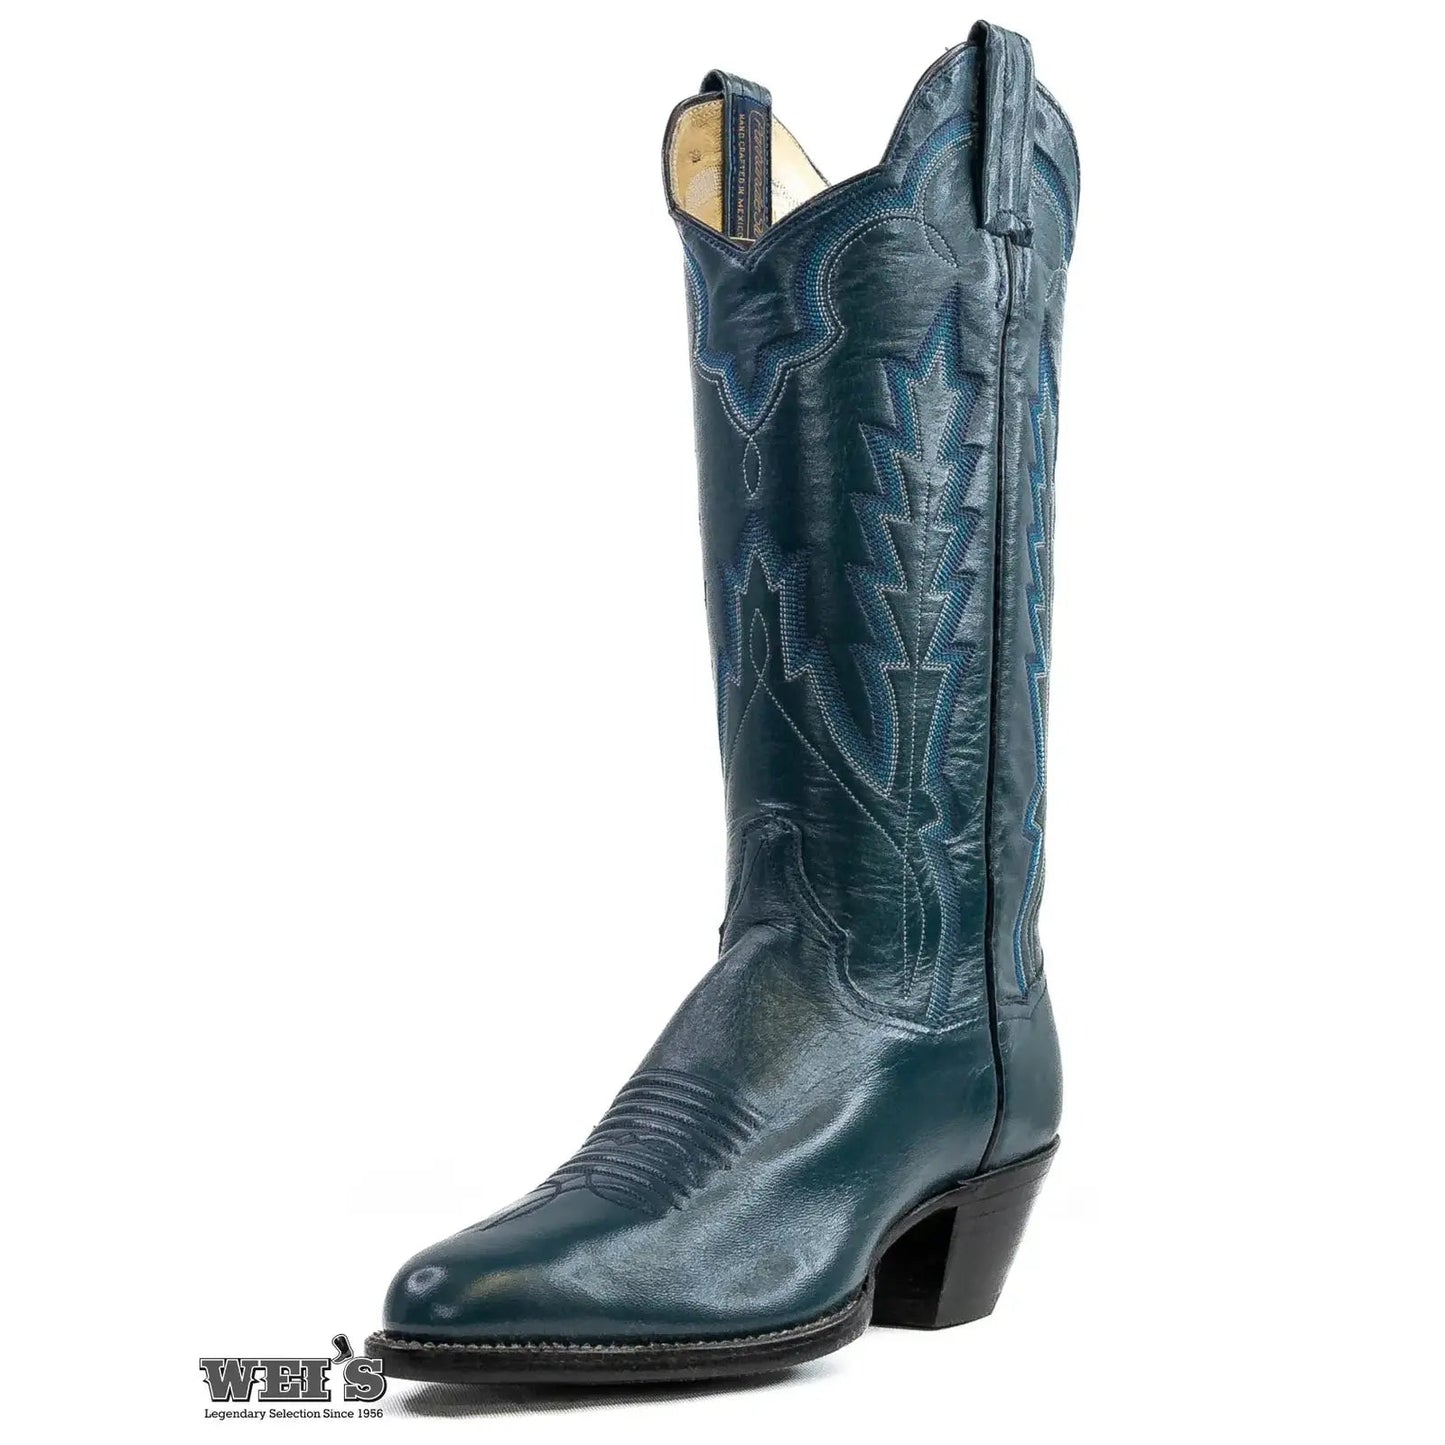 Panhandle Slim Women's Cowgirl Boots Cowhide R Toe W55906 - Panhandle Slim